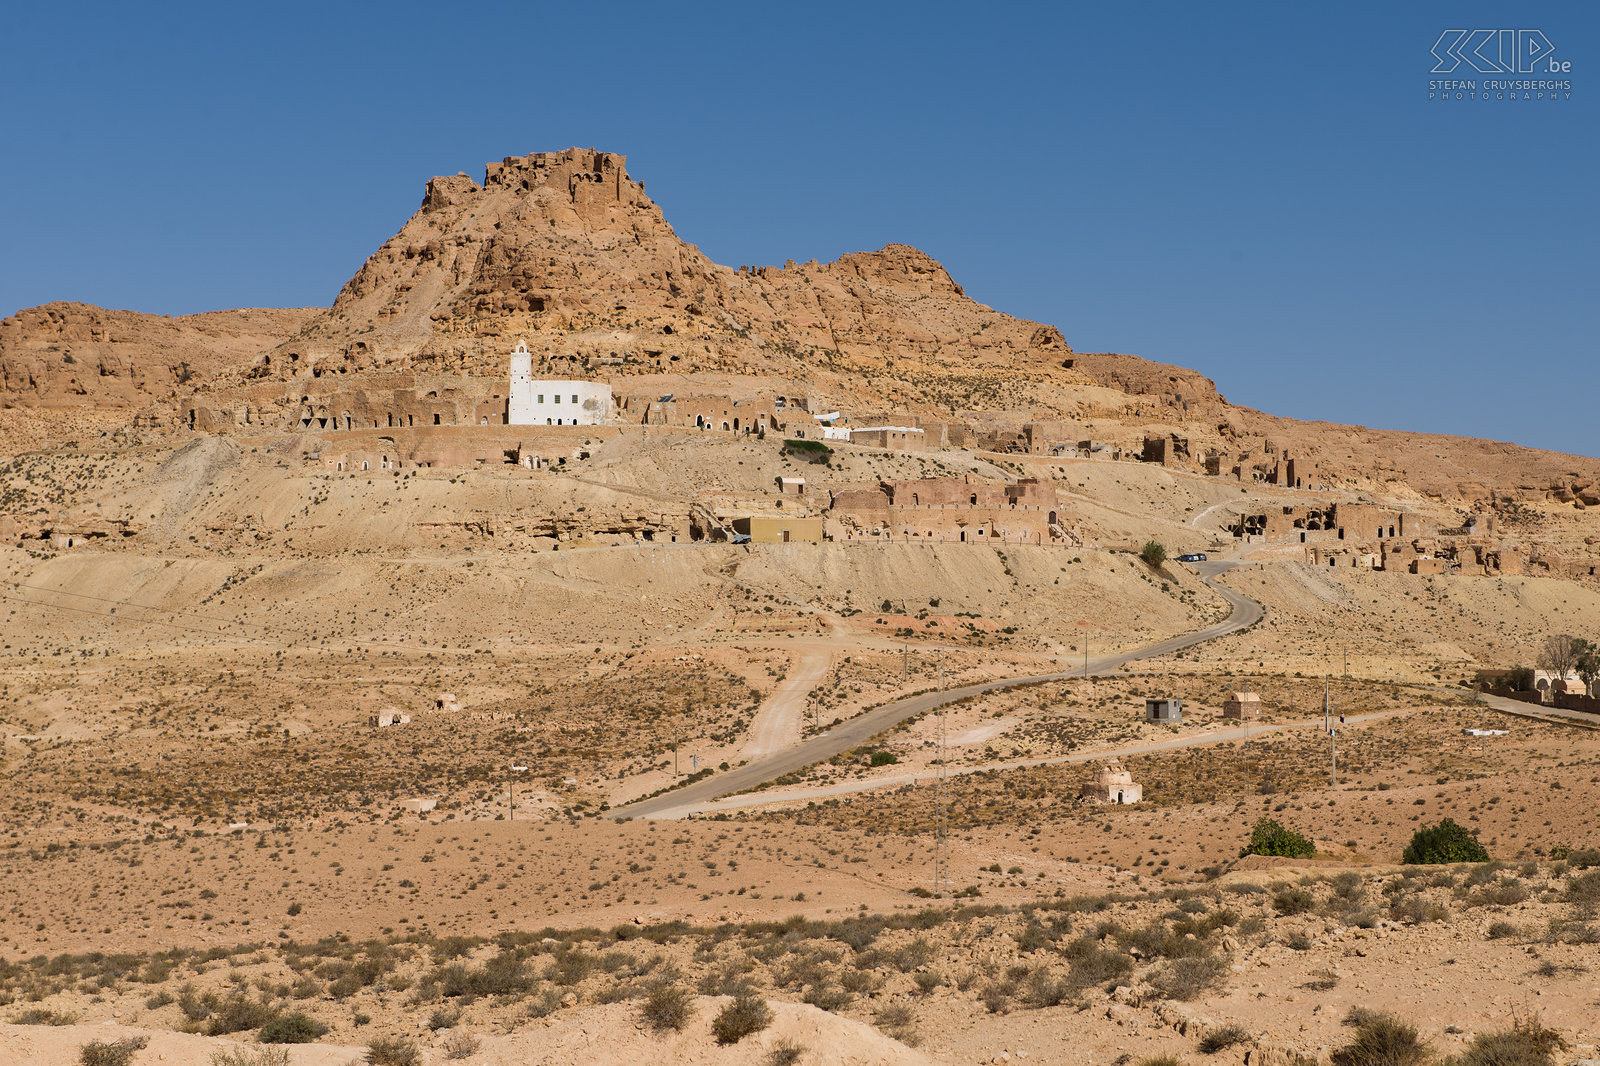 Douiret Het verlaten Berber dorp Douiret, schitterend tegen de heuvel aangebouwd, was ooit een stopplaats op de karavaanroute van Ghabès naar Ghadamis. Het dorpje van Douriret is van onderaan de heuvel amper zichtbaar en gaat volledig op in het landschap van de honderd meters lange berg. De meest indrukwekkende huizen van Douiret zijn al lang verlaten. Sommige van de huizen zijn 3 tot 4 verdiepingen hoog. Sommige kamers hebben muurschilderingen en gravures in de plafonds. Rond 1850 woonden er ongeveer 3500 mensen. Nu zijn er nog 5 families die er de traditie verder zetten. De belangrijkste inkomstenbron van Douiret kwam van olijven waaruit olie werd gewonnen door molens die door kamelen werden bewogen. Stefan Cruysberghs